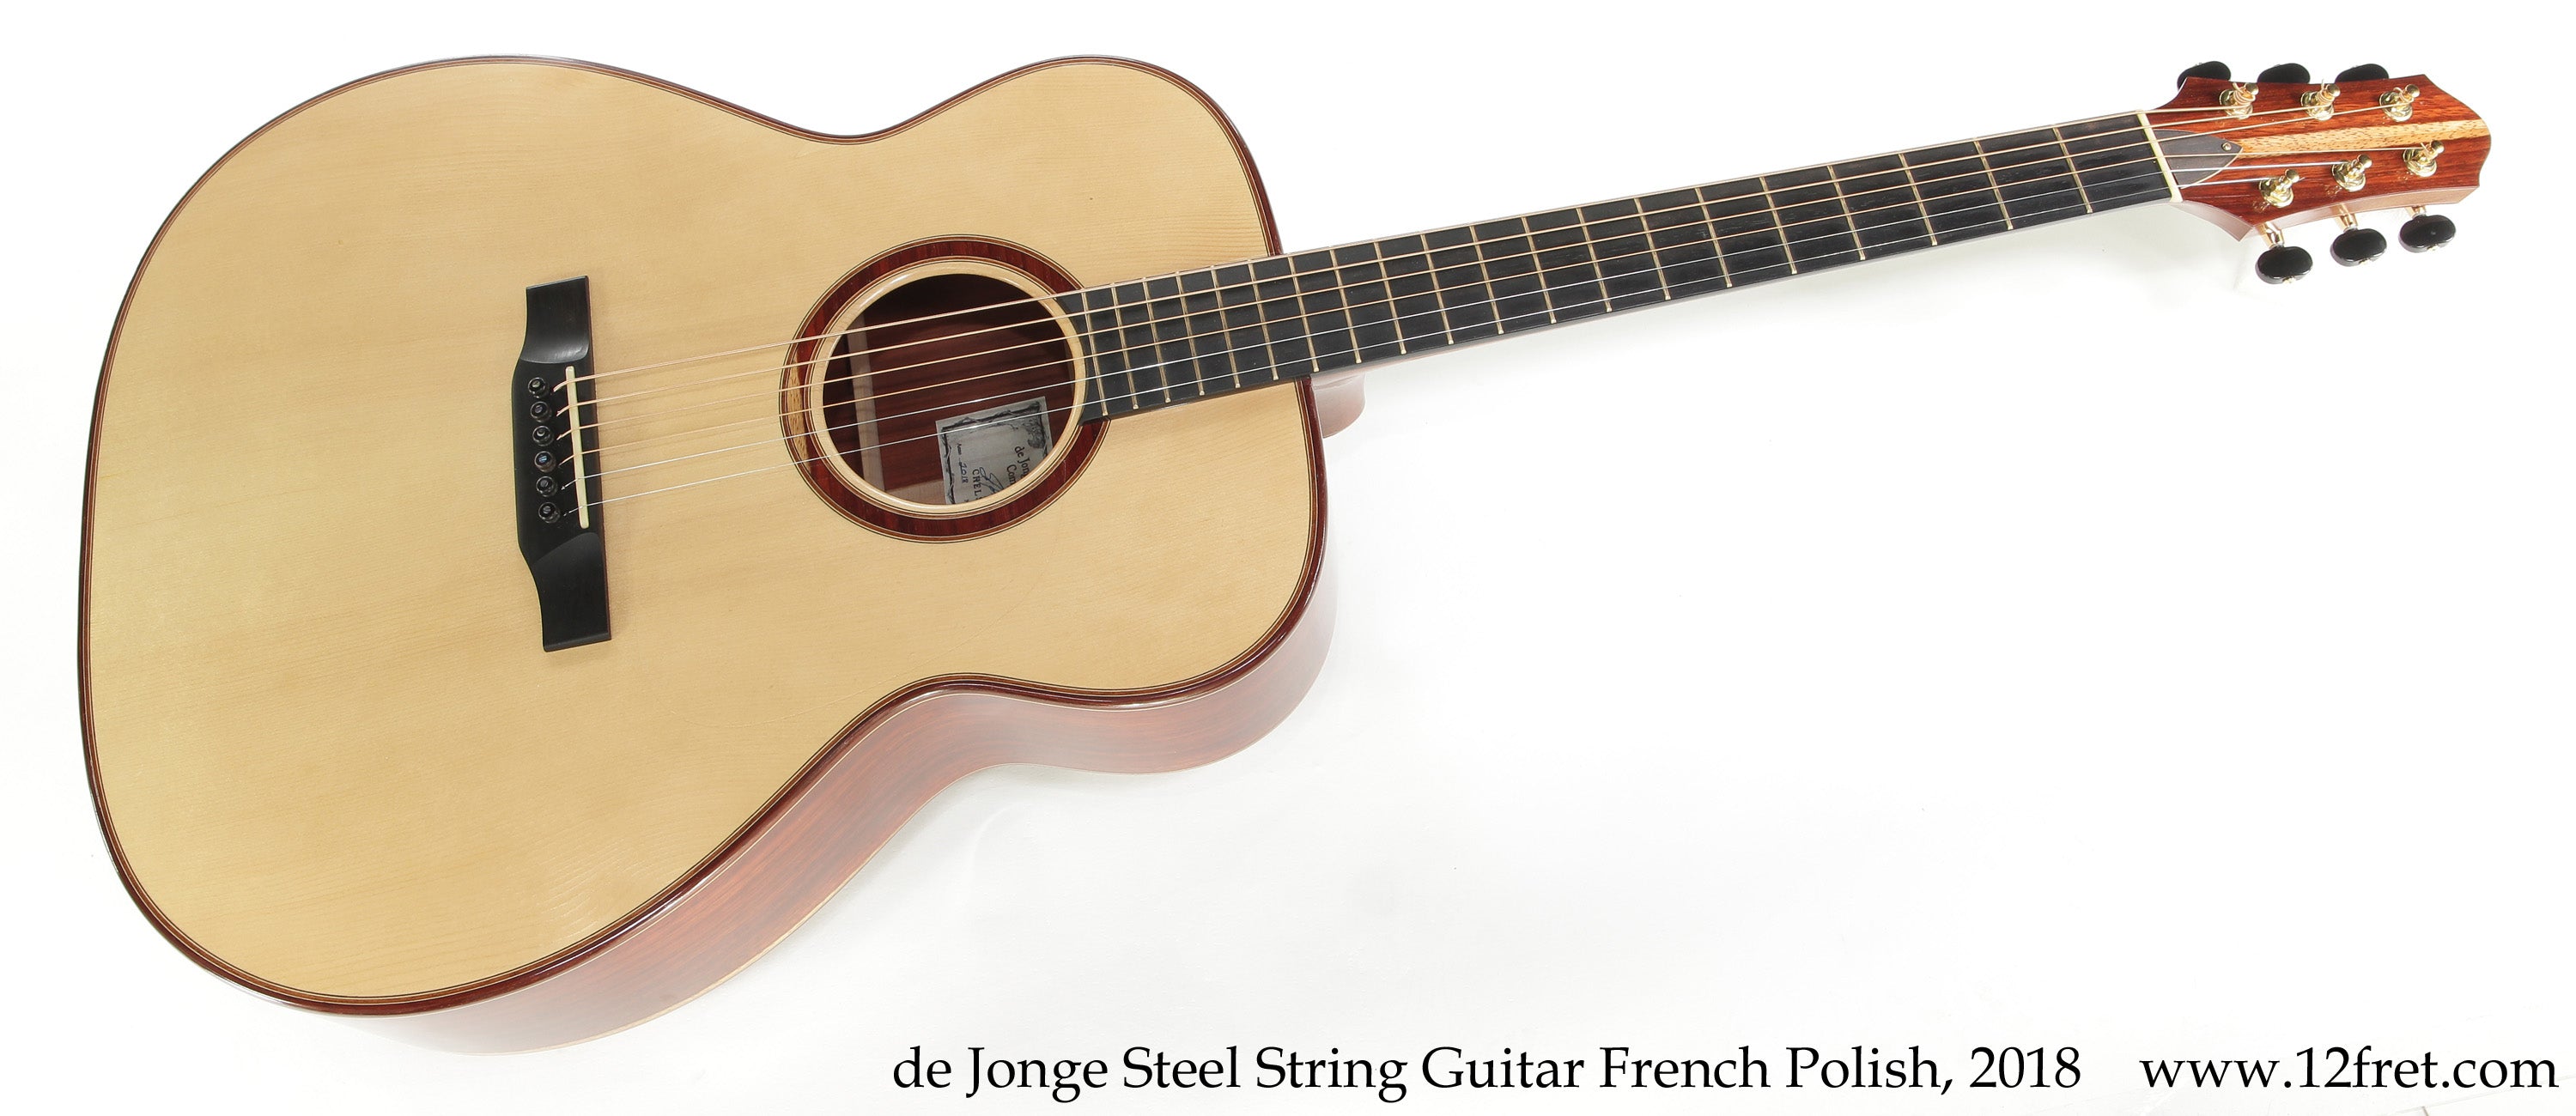 Sergei de Jonge Steel String Guitar French Polish, 2018 - The Twelfth Fret